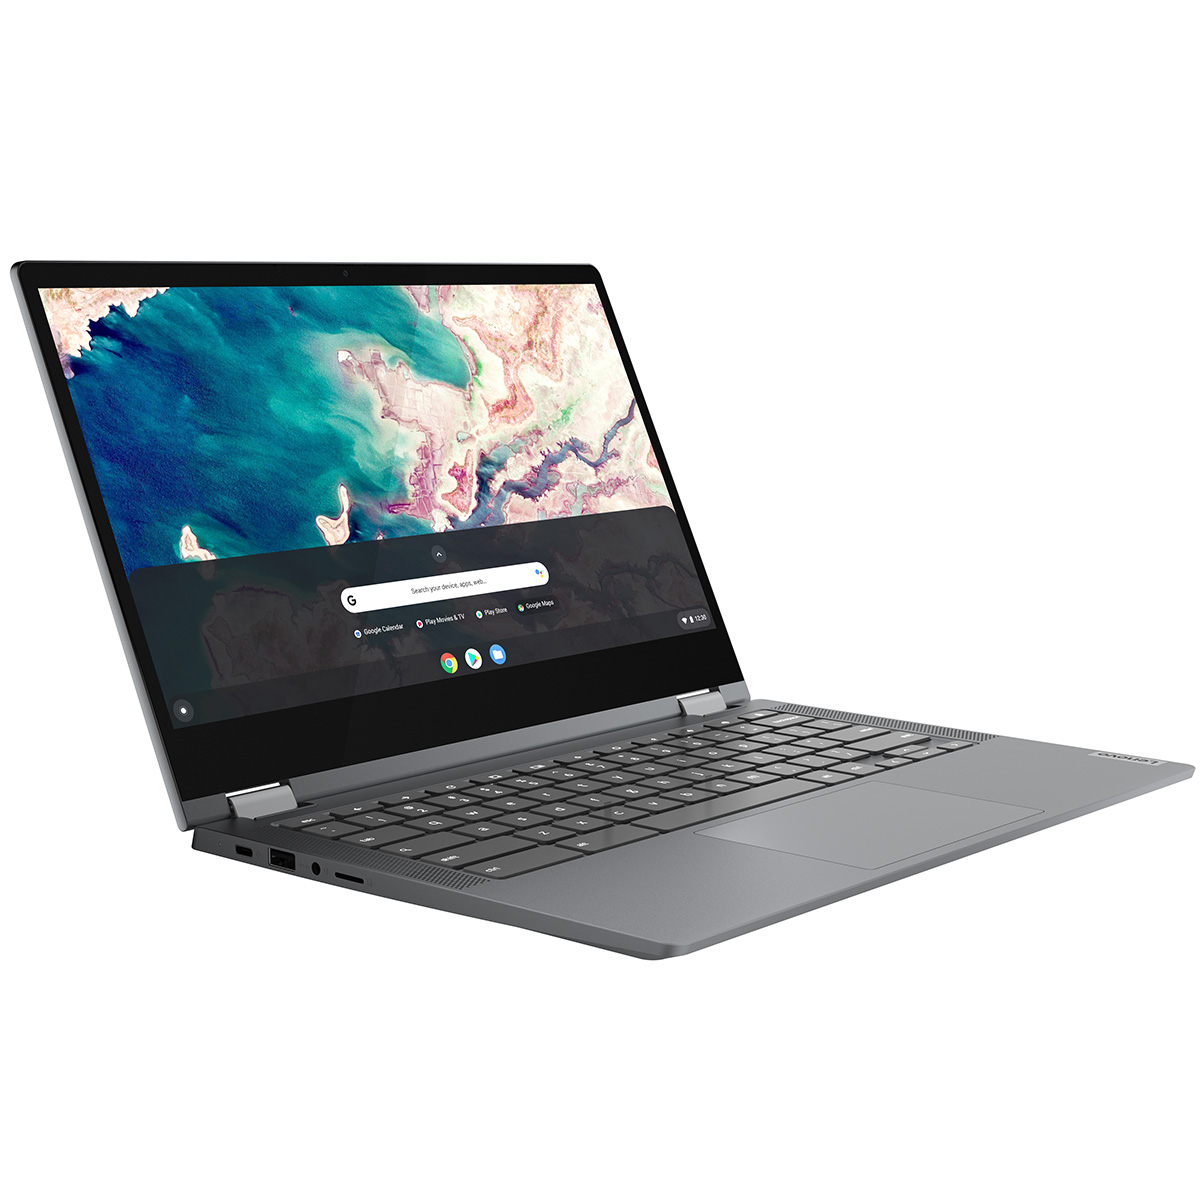 【マウスセット】限定特典付き Chromebook 新品 ノートパソコン IdeaPad Flex550i 13.3型 メモリ4GB タッチパネル対応